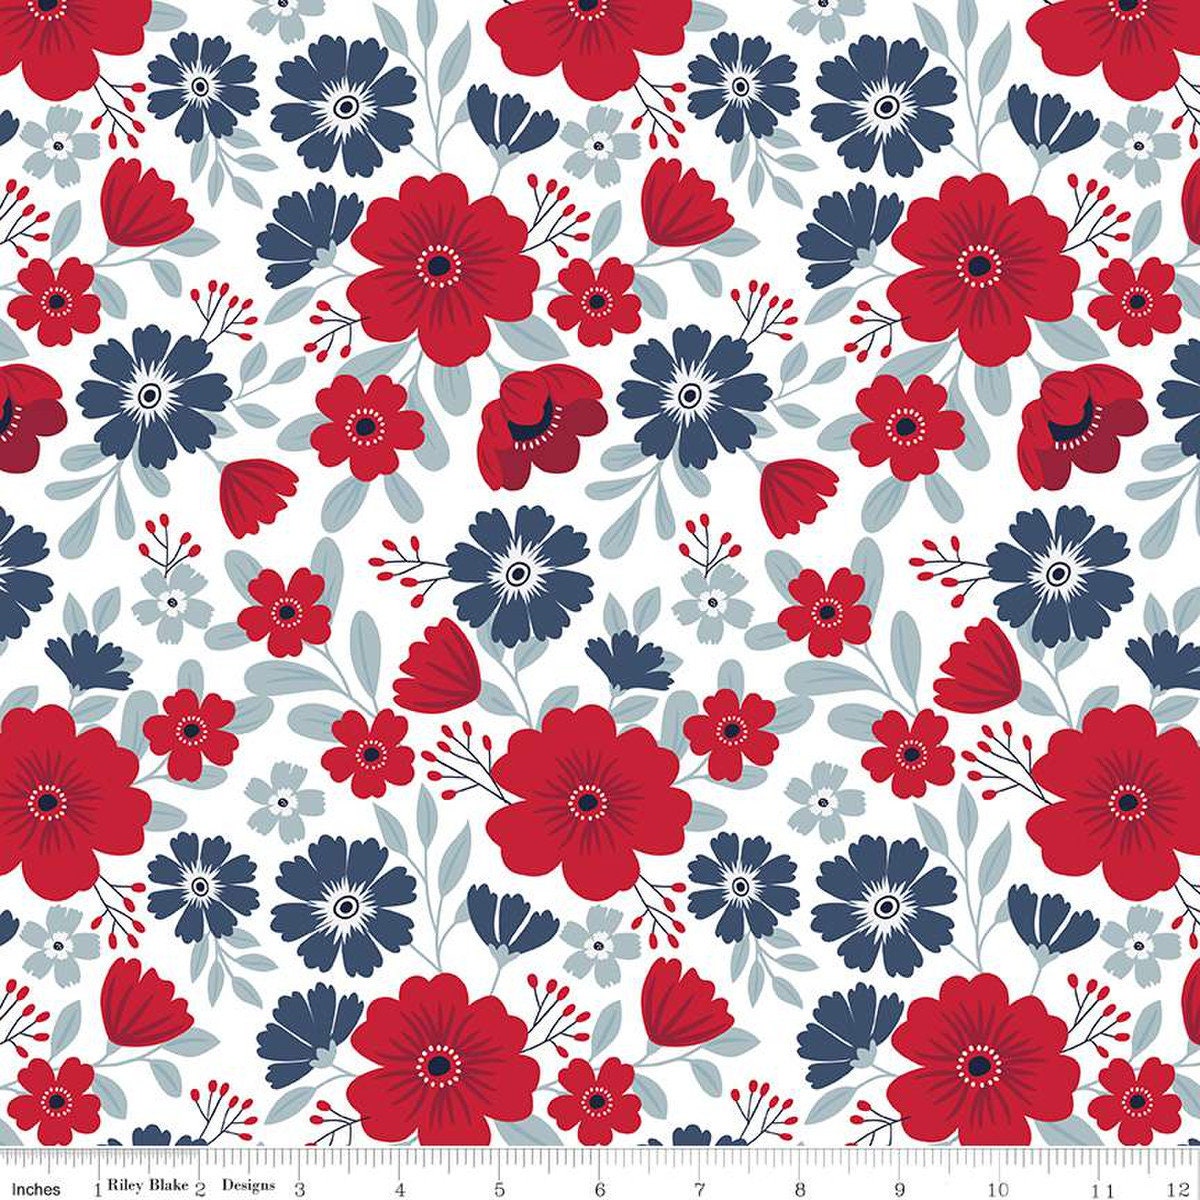 American Beauty Fat Quarter Bundle 27pc - Riley Blake Designs FQ-14440-27, Patriotic Floral Fabric Fat Quarter Bundle